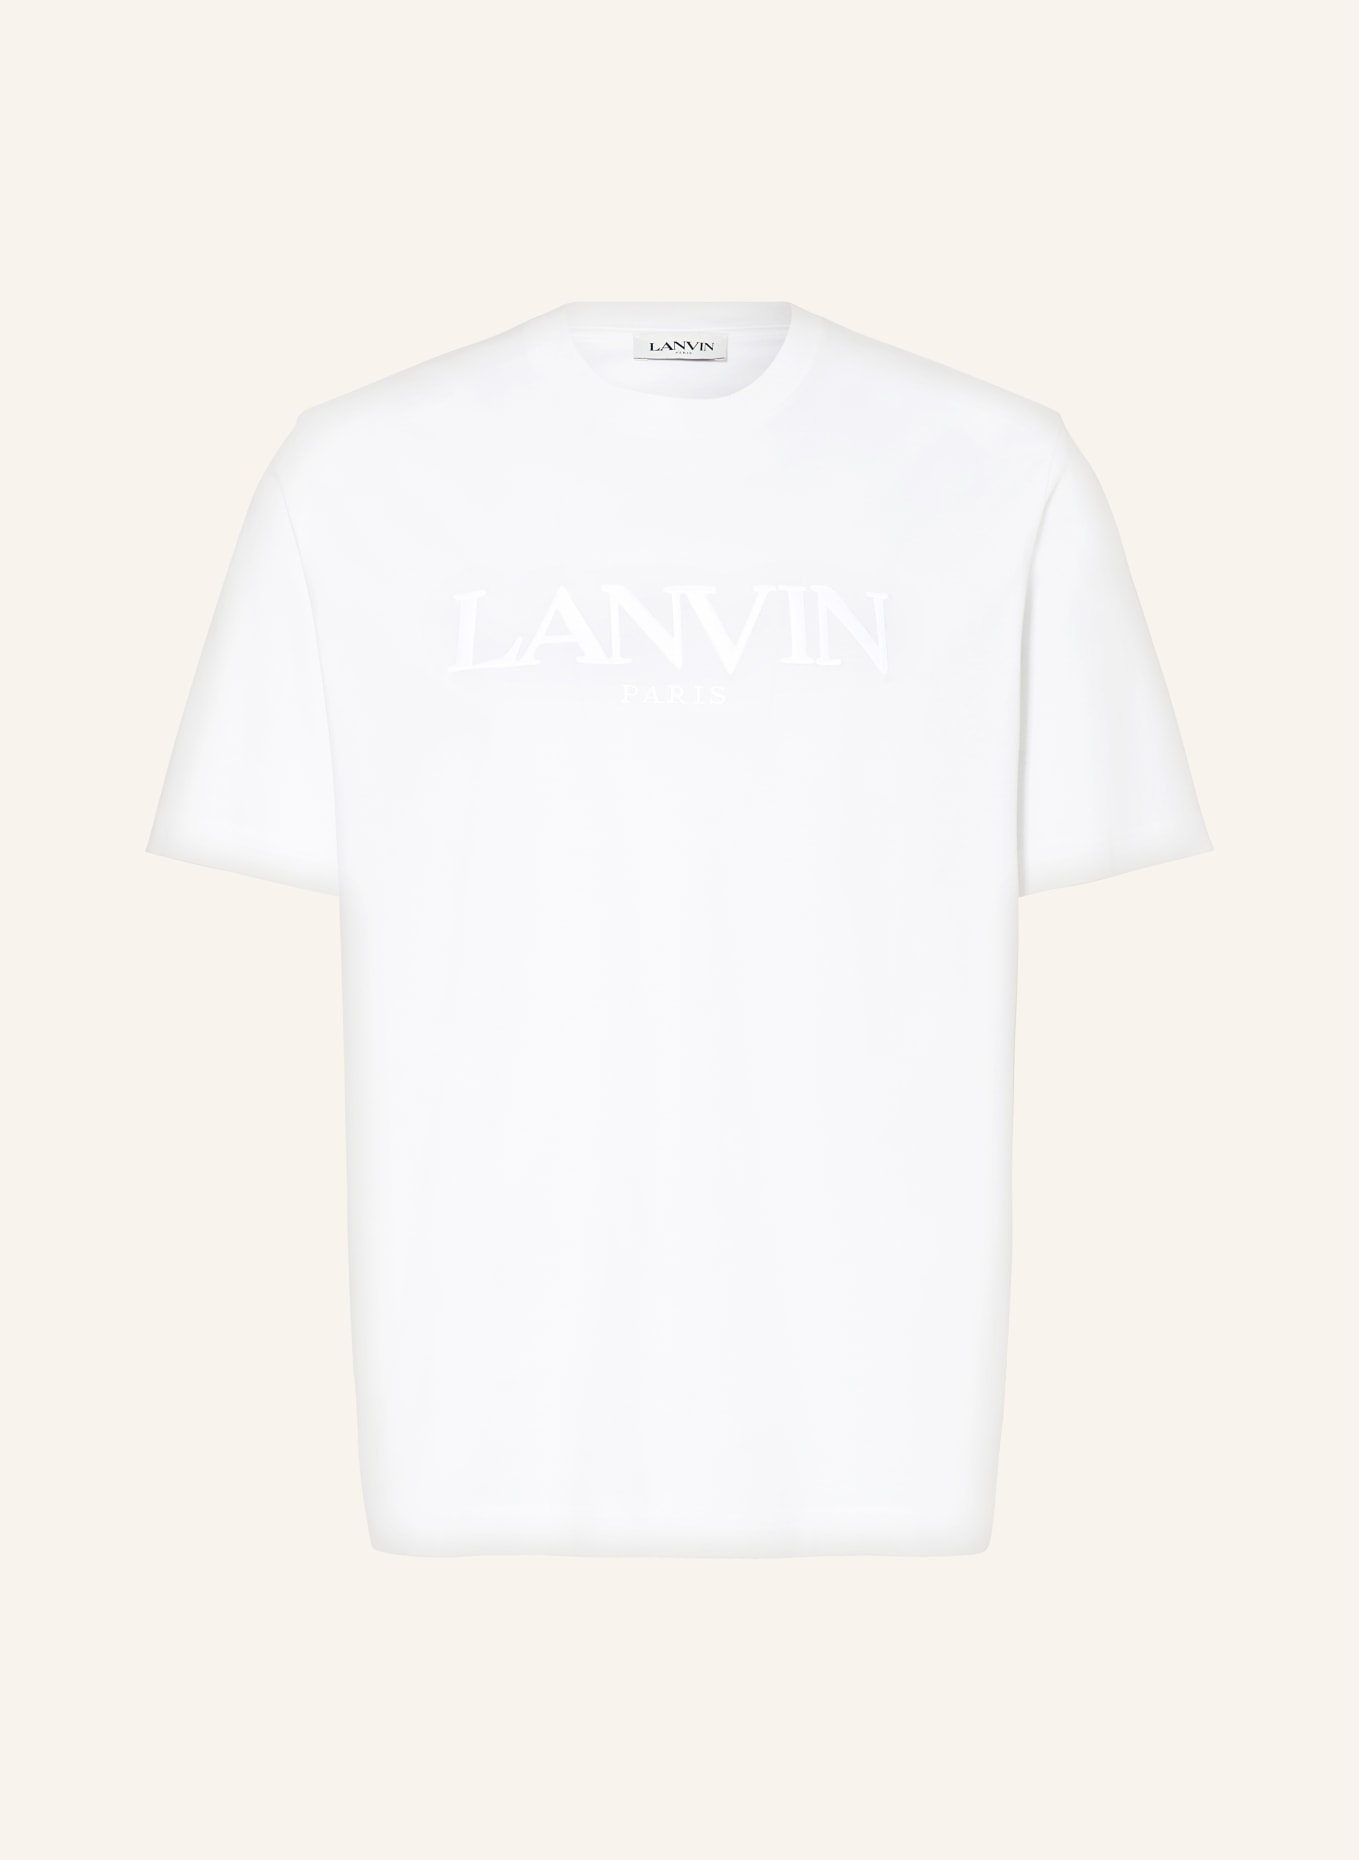 LANVIN T-shirt, Color: WHITE (Image 1)